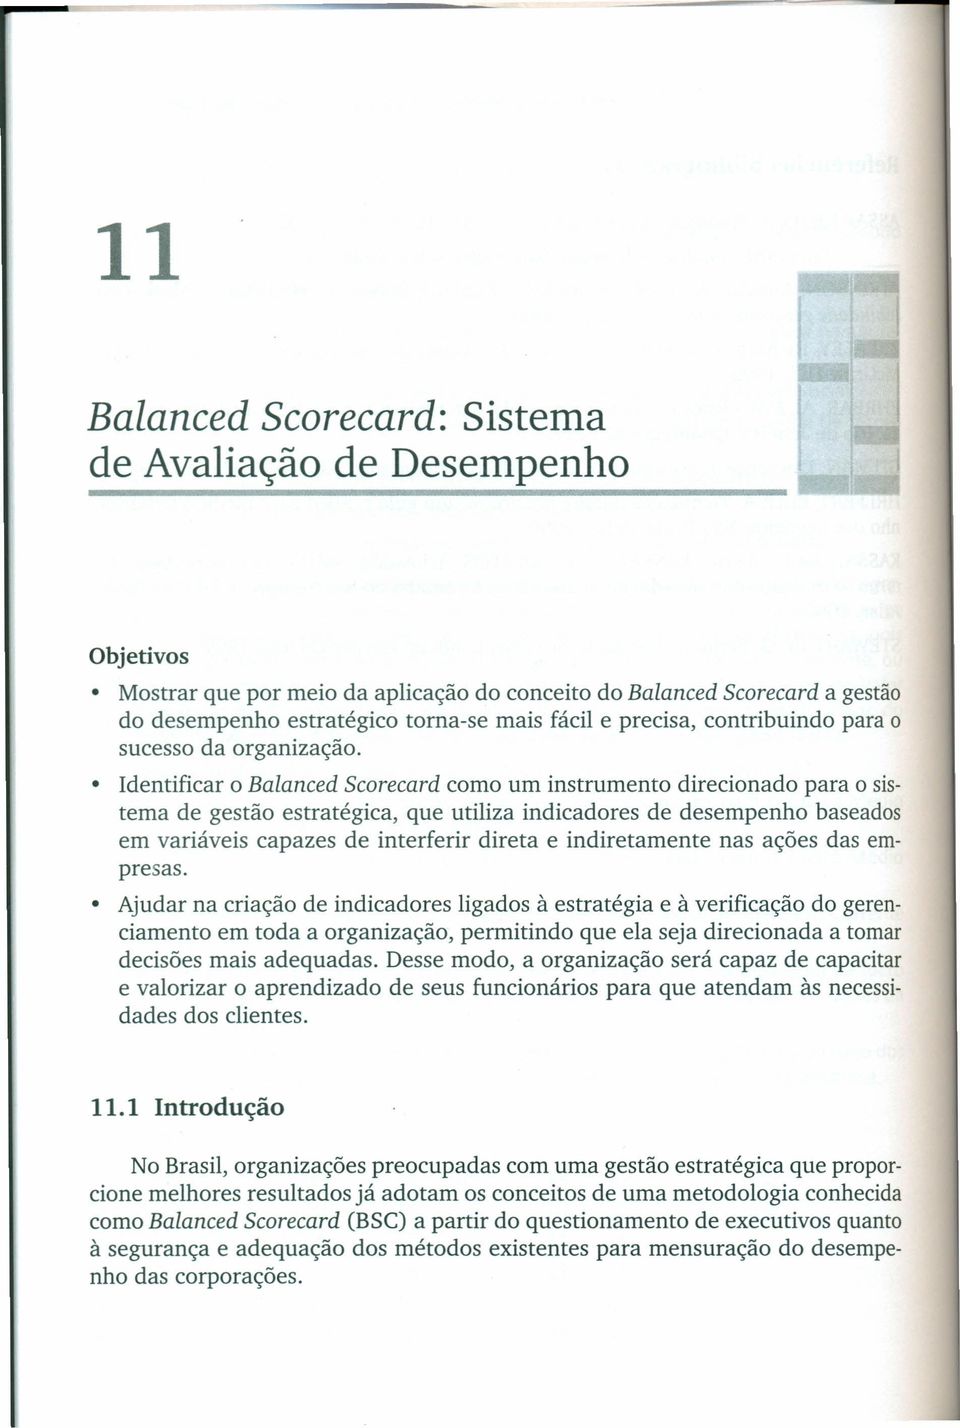 Identificar o Balanced Scorecard como um instrumento direcionado para o sistema de gestão estratégica, que utiliza indicadores de desempenho baseados em variáveis capazes de interferir direta e